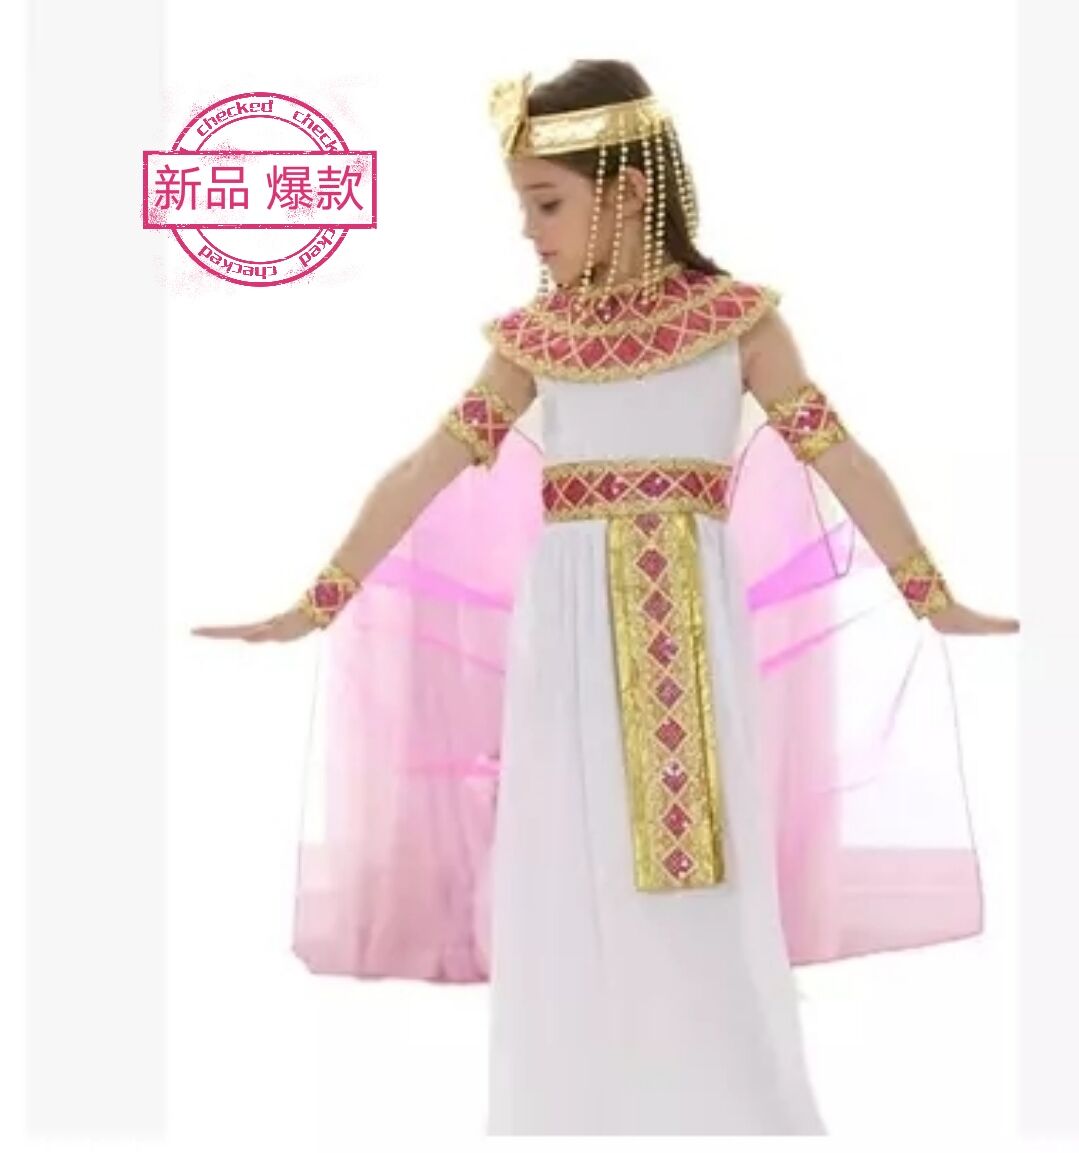 万圣节新款儿童演出服装Cosplay表演衣服女童古埃及希腊公主裙